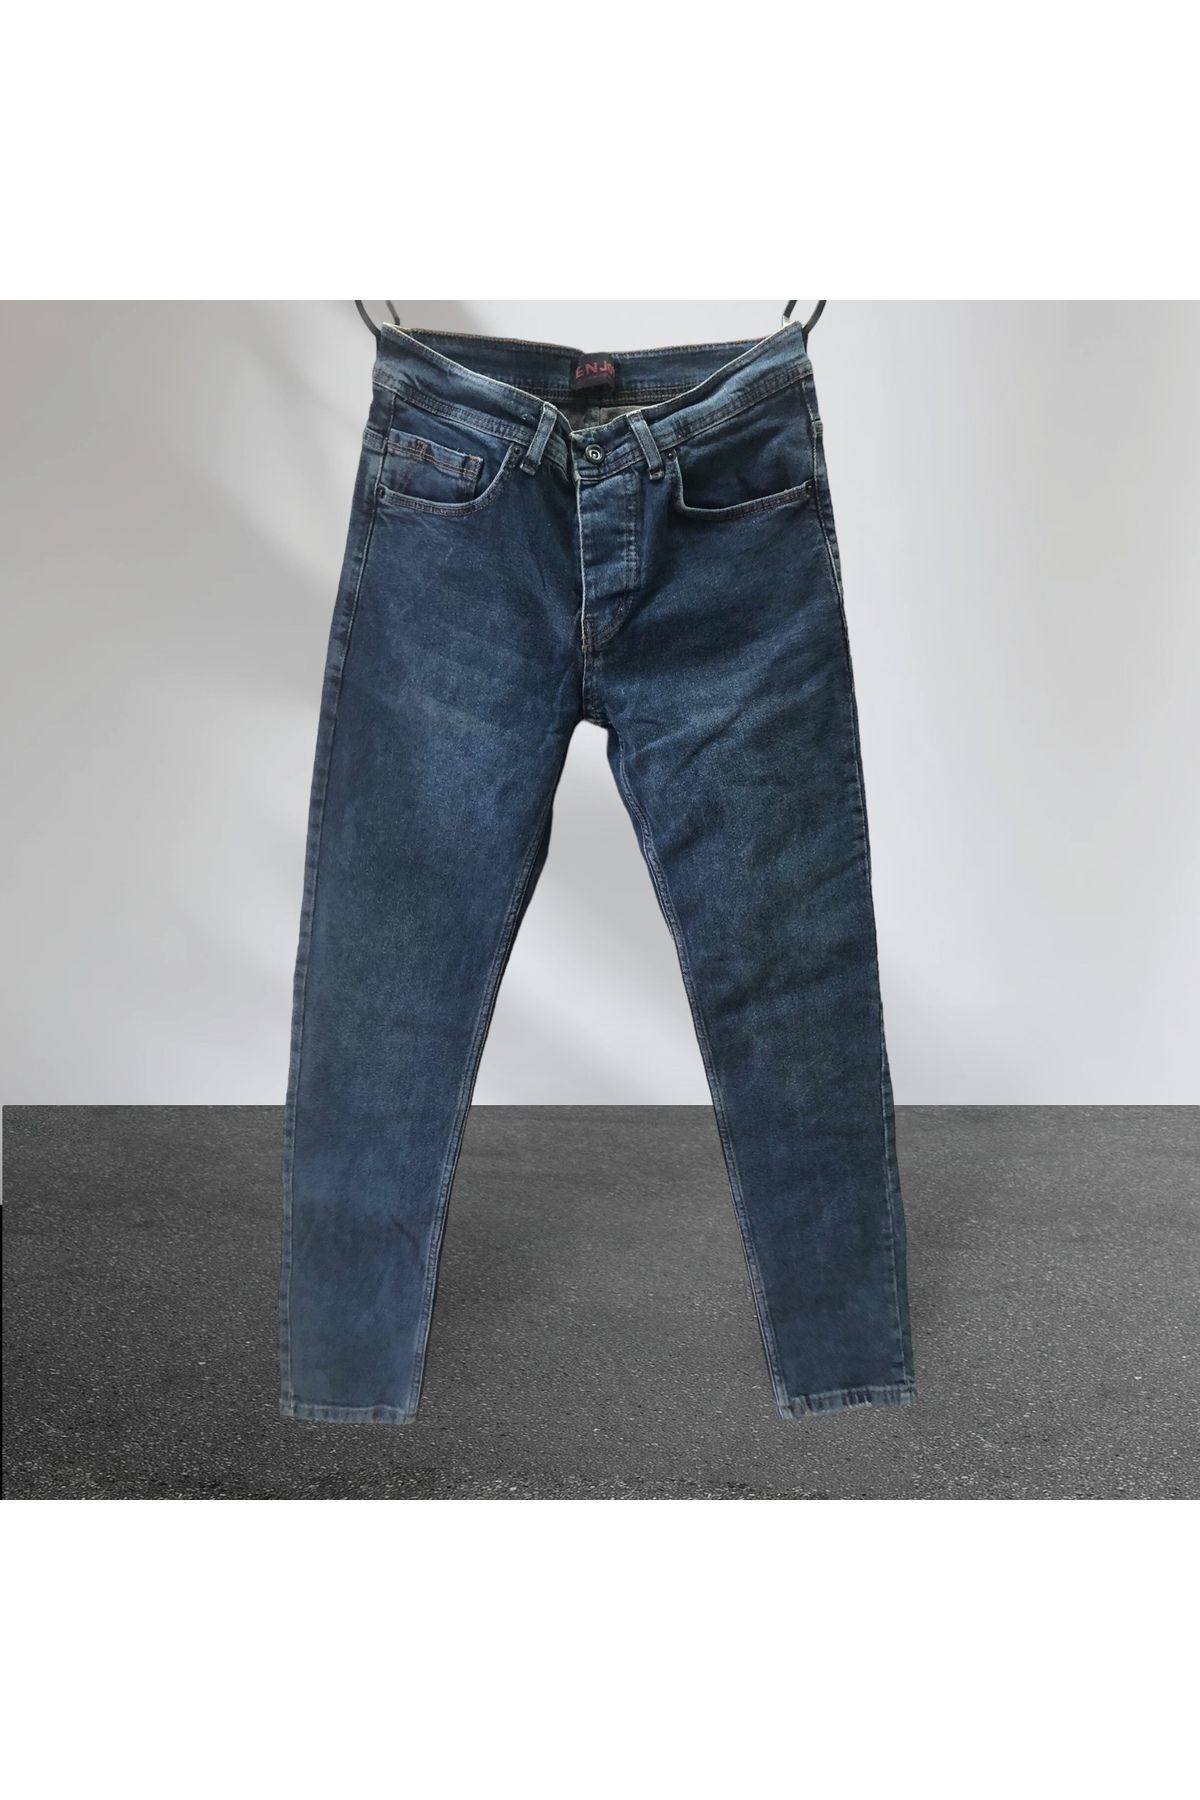 Enjoy Kot-Jeans-Taşlanmış-Slim Fit-Ligralı-Düğmeli Pantolon